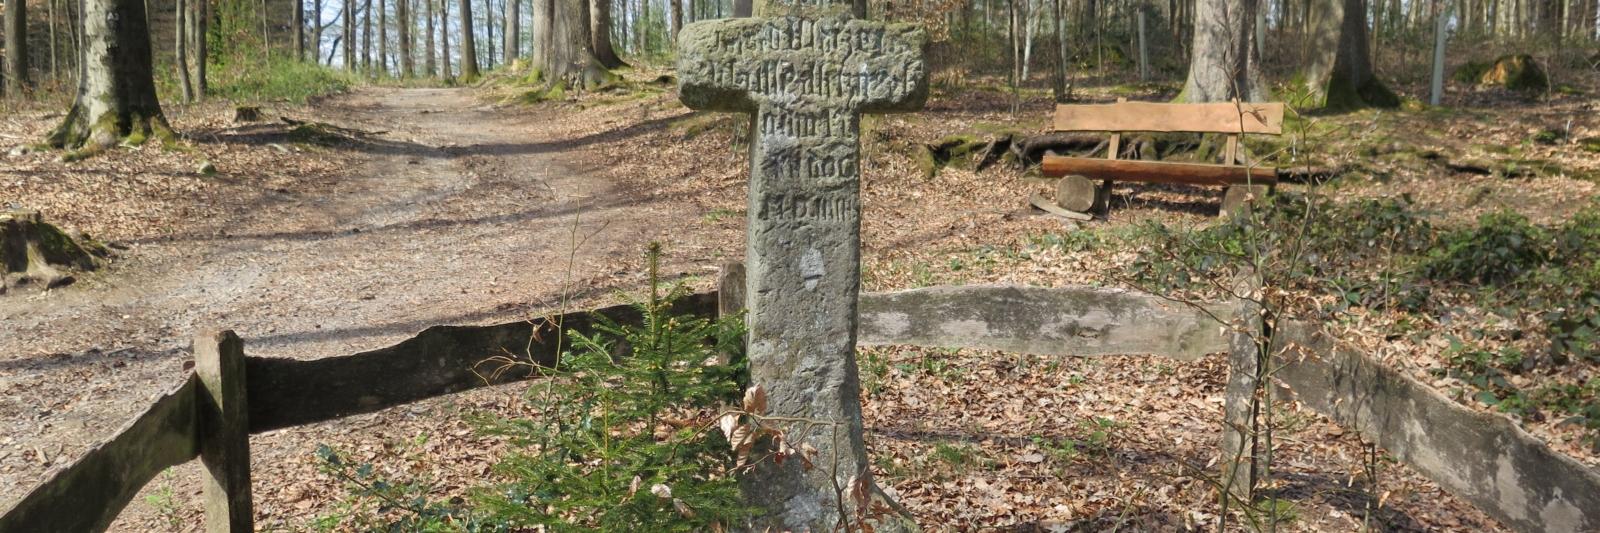 Im Wald an der Eschbachtalsperre (Remscheid, Stadtbezirk Lennep) findet man ein 500 Jahre altes Kreuz – ein Mord- oder Sühnekreuz, weil es wohl zur Sühne eines Mordes aufgestellt wurde.